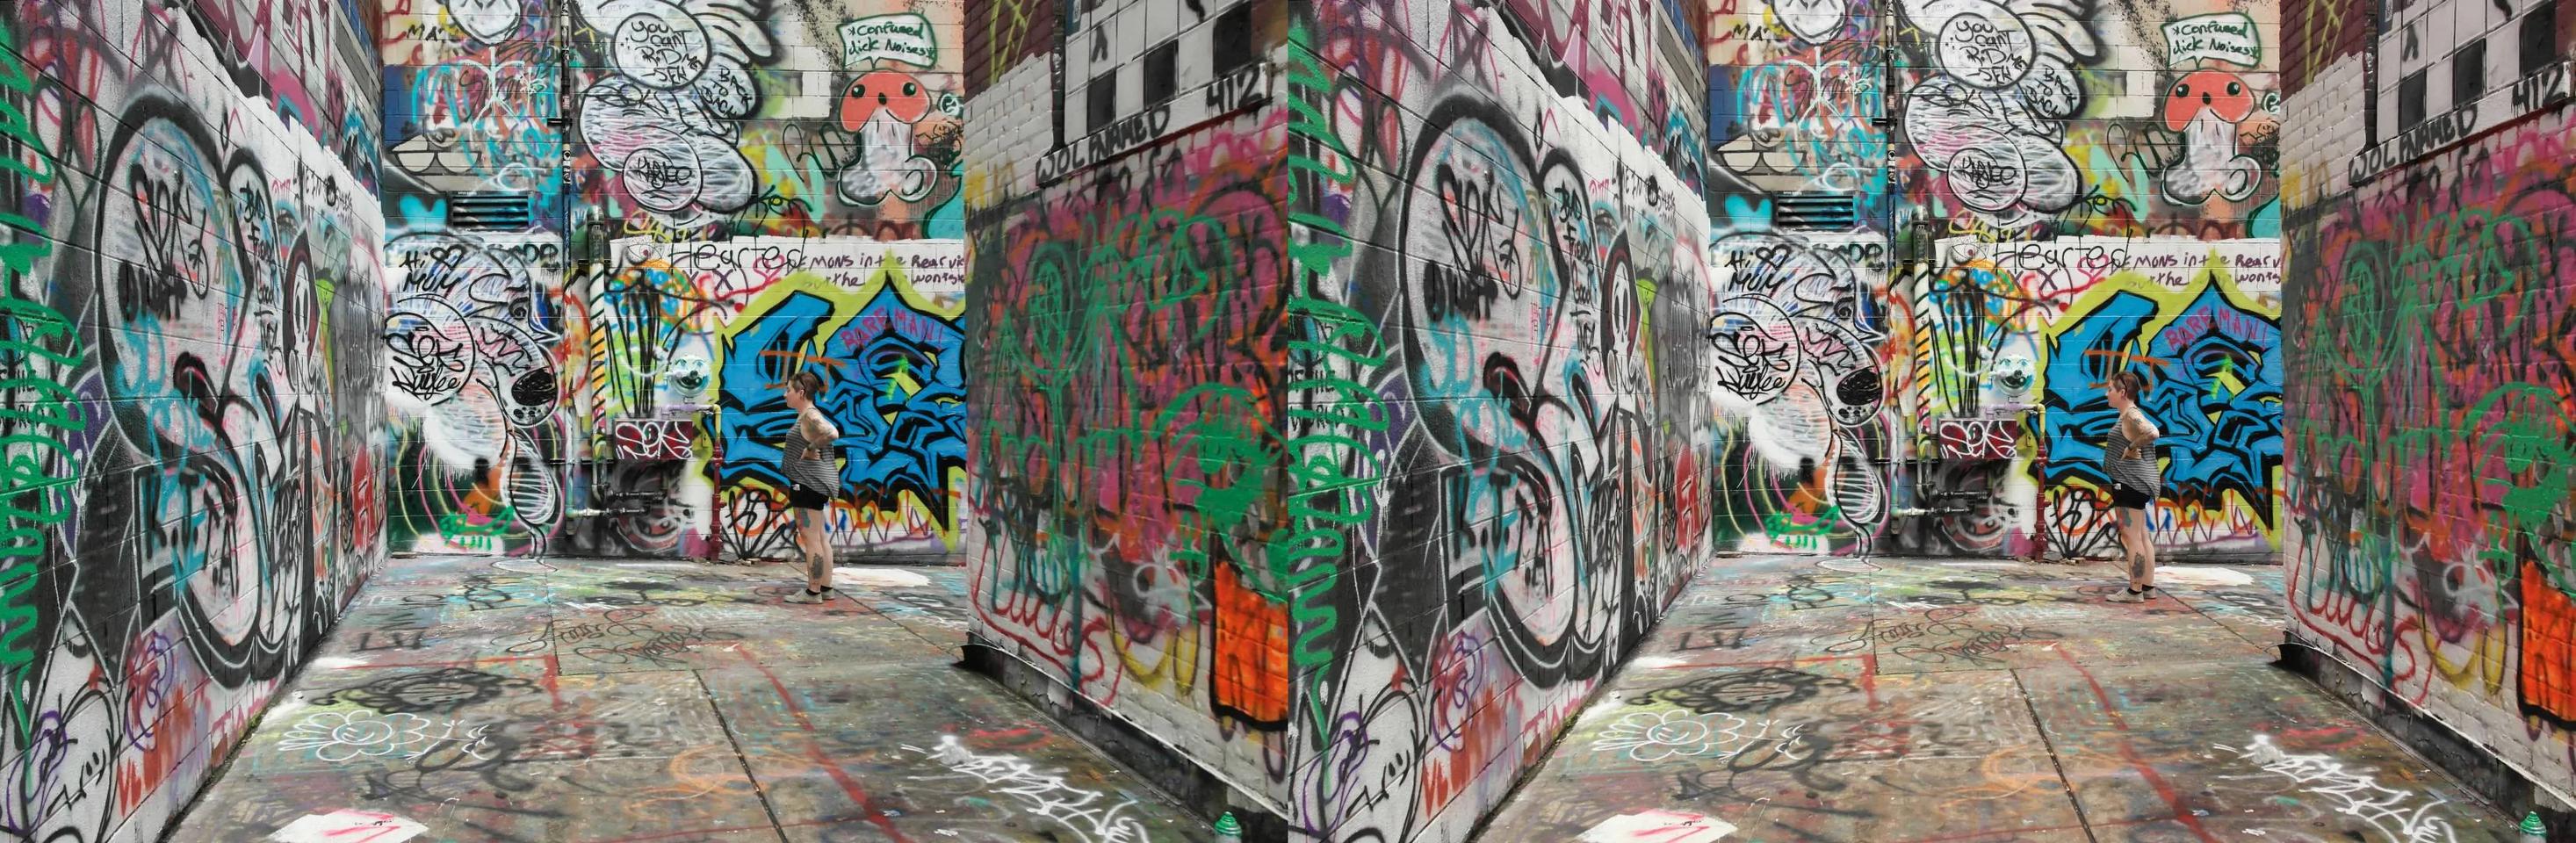 Graffiti Wall in Ann Arbor